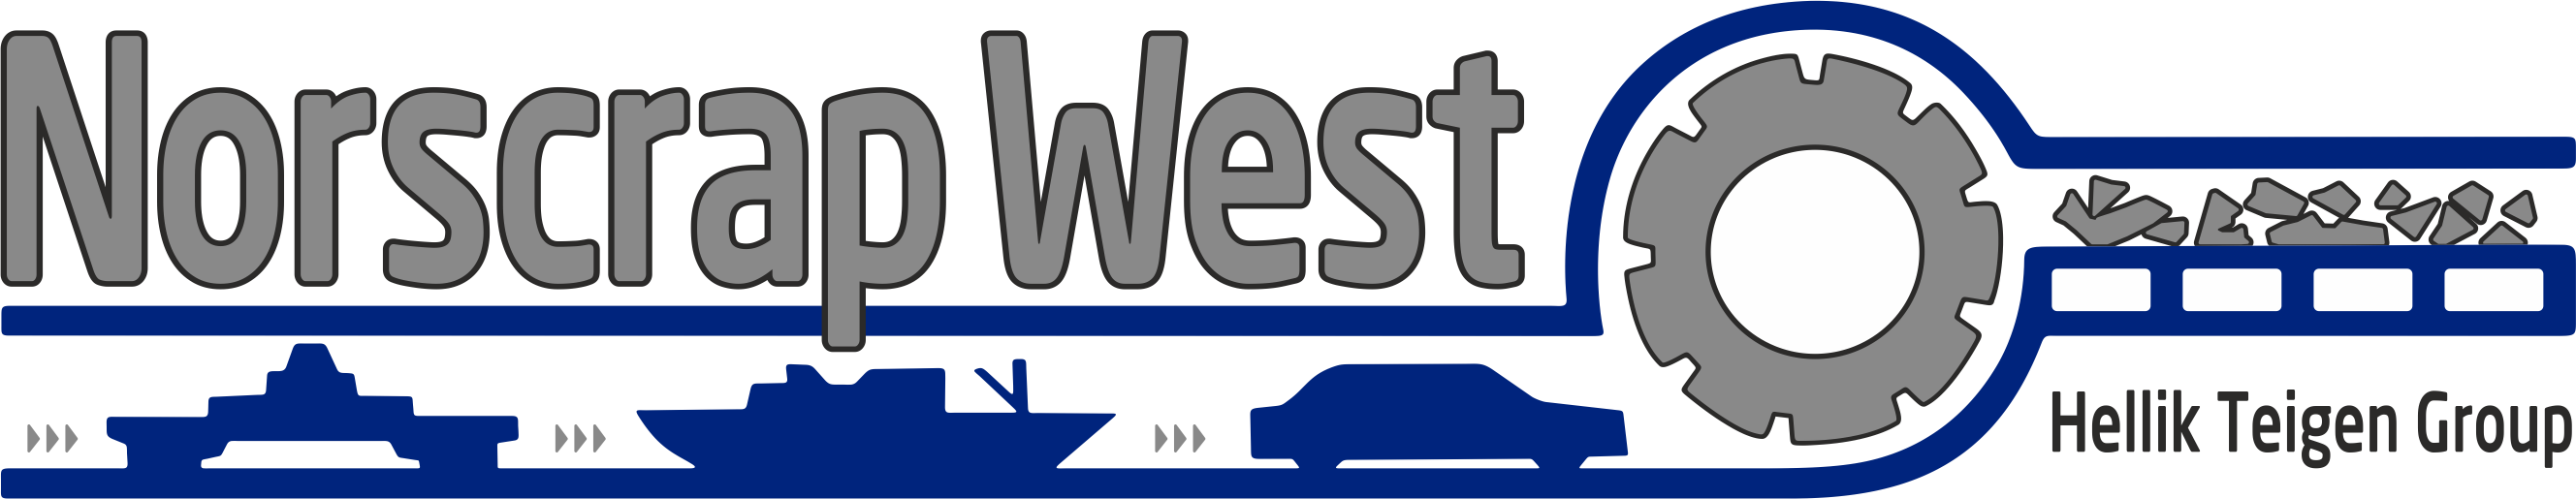 Norscrap West AS logo